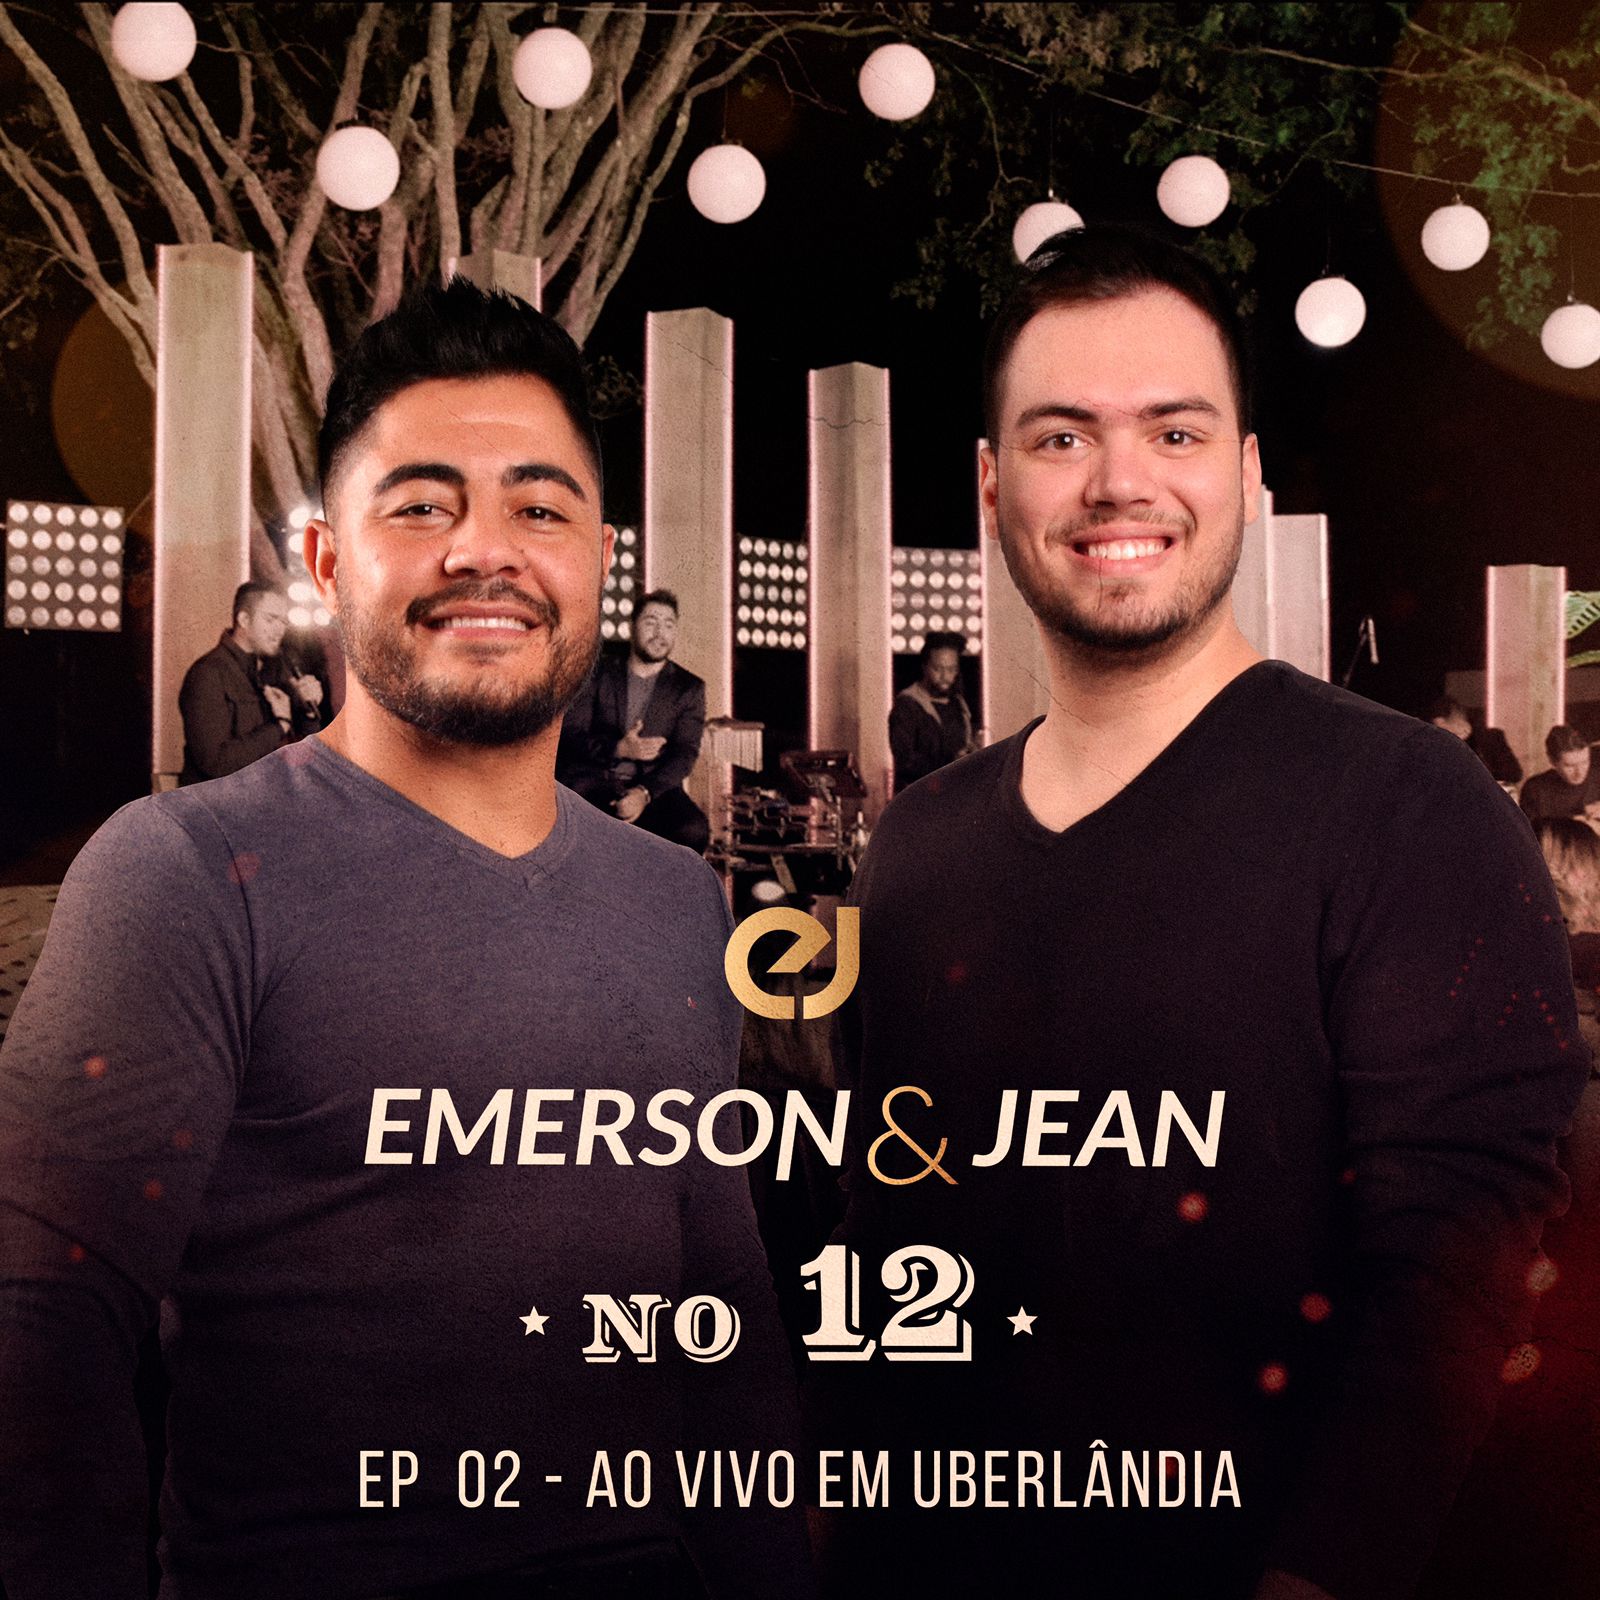 noticia Com mensagem de esperança, Emerson & Jean apresentam EP 02 de “No 12”